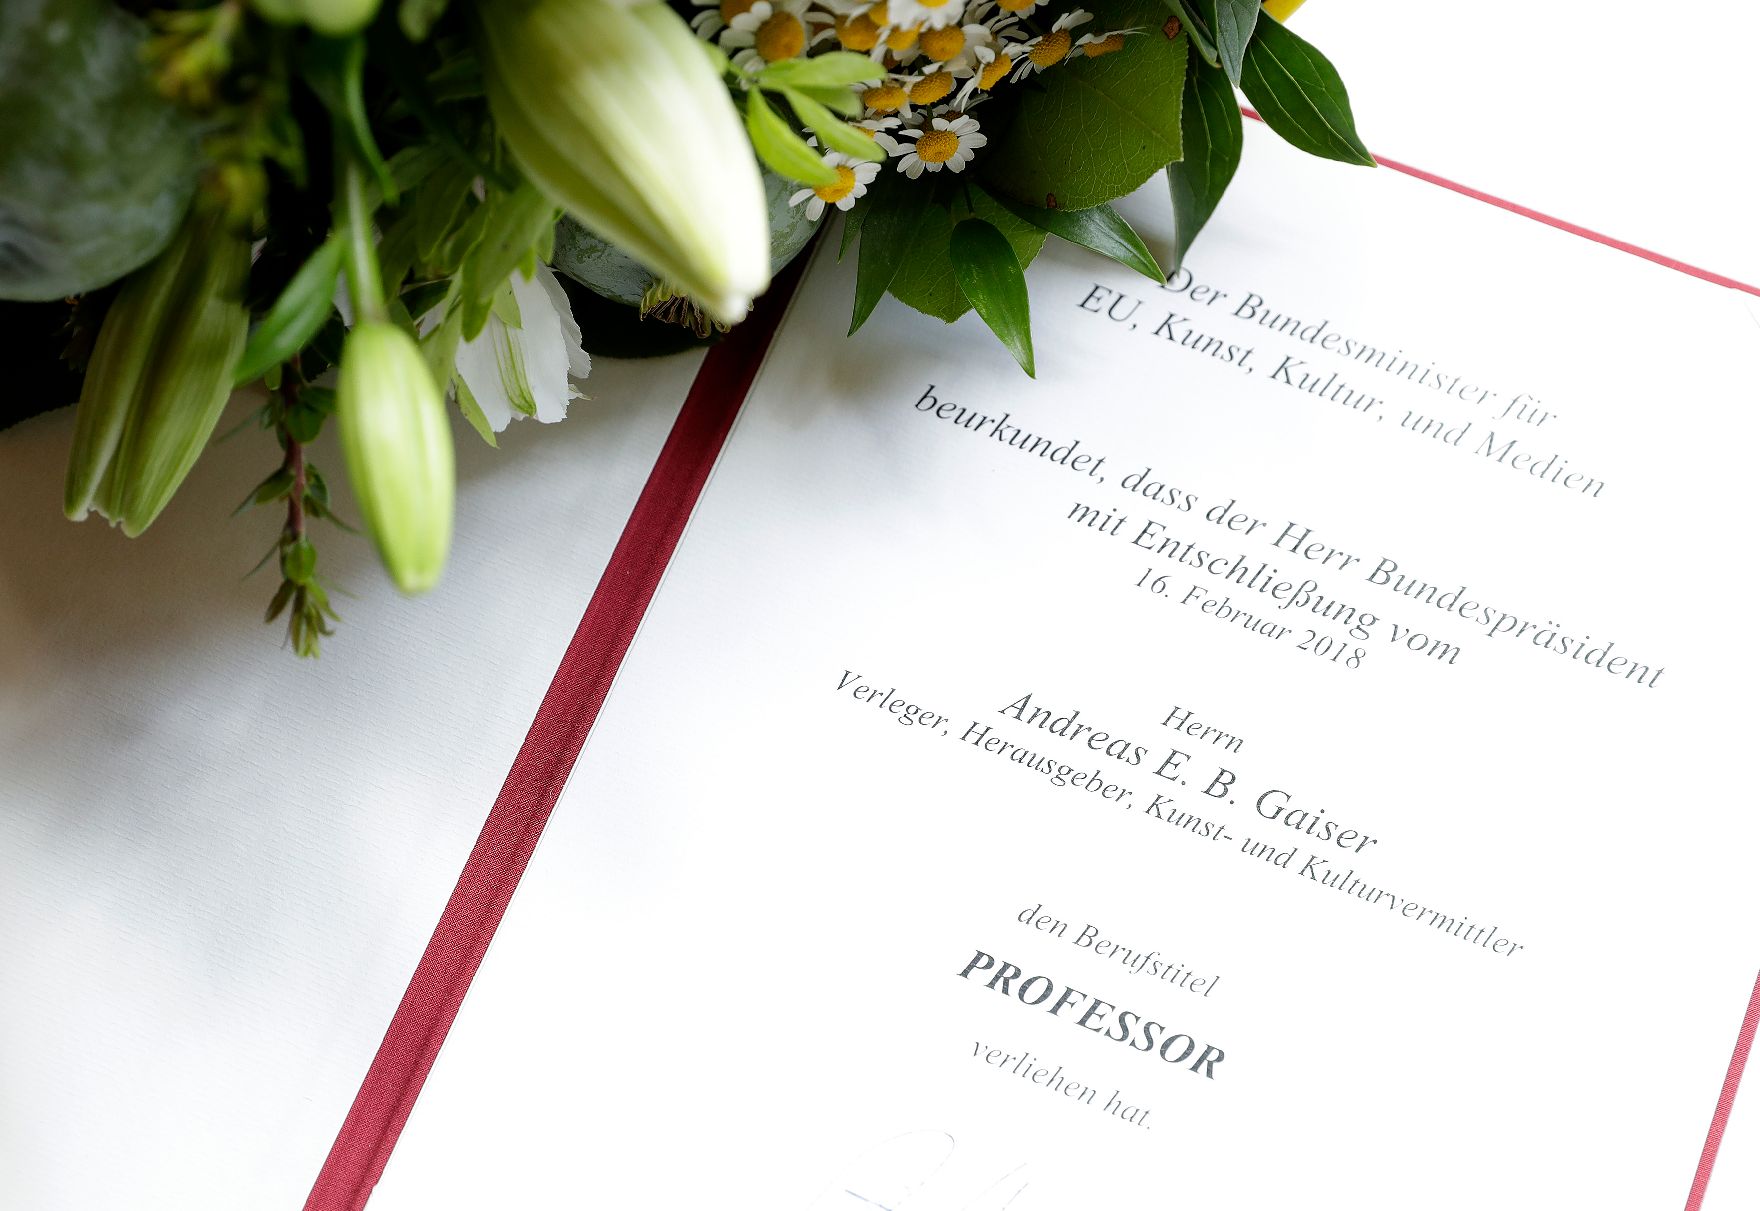 Am 27. Juni 2018 wurden die Urkunde über die Verleihung des Berufstitels Professor an Andreas Gaiser und das Österreichische Ehrenkreuz für Wissenschaft und Kunst I. Klasse an Elisabeth Heresch überreicht.